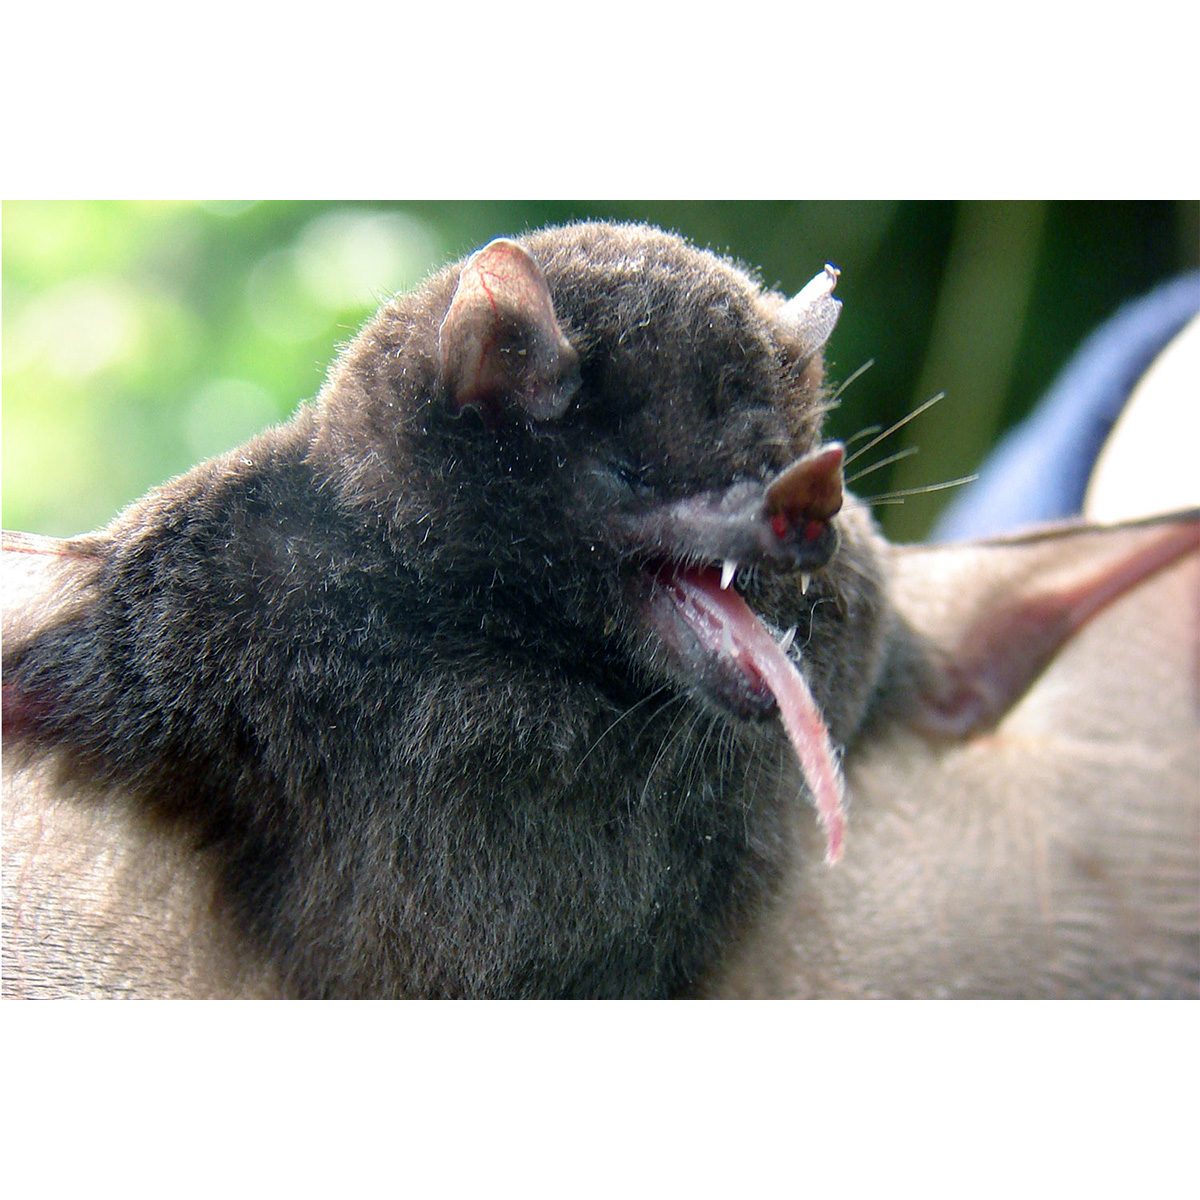 Equatorial tailless bat (Anoura aequatoris) Фото №2